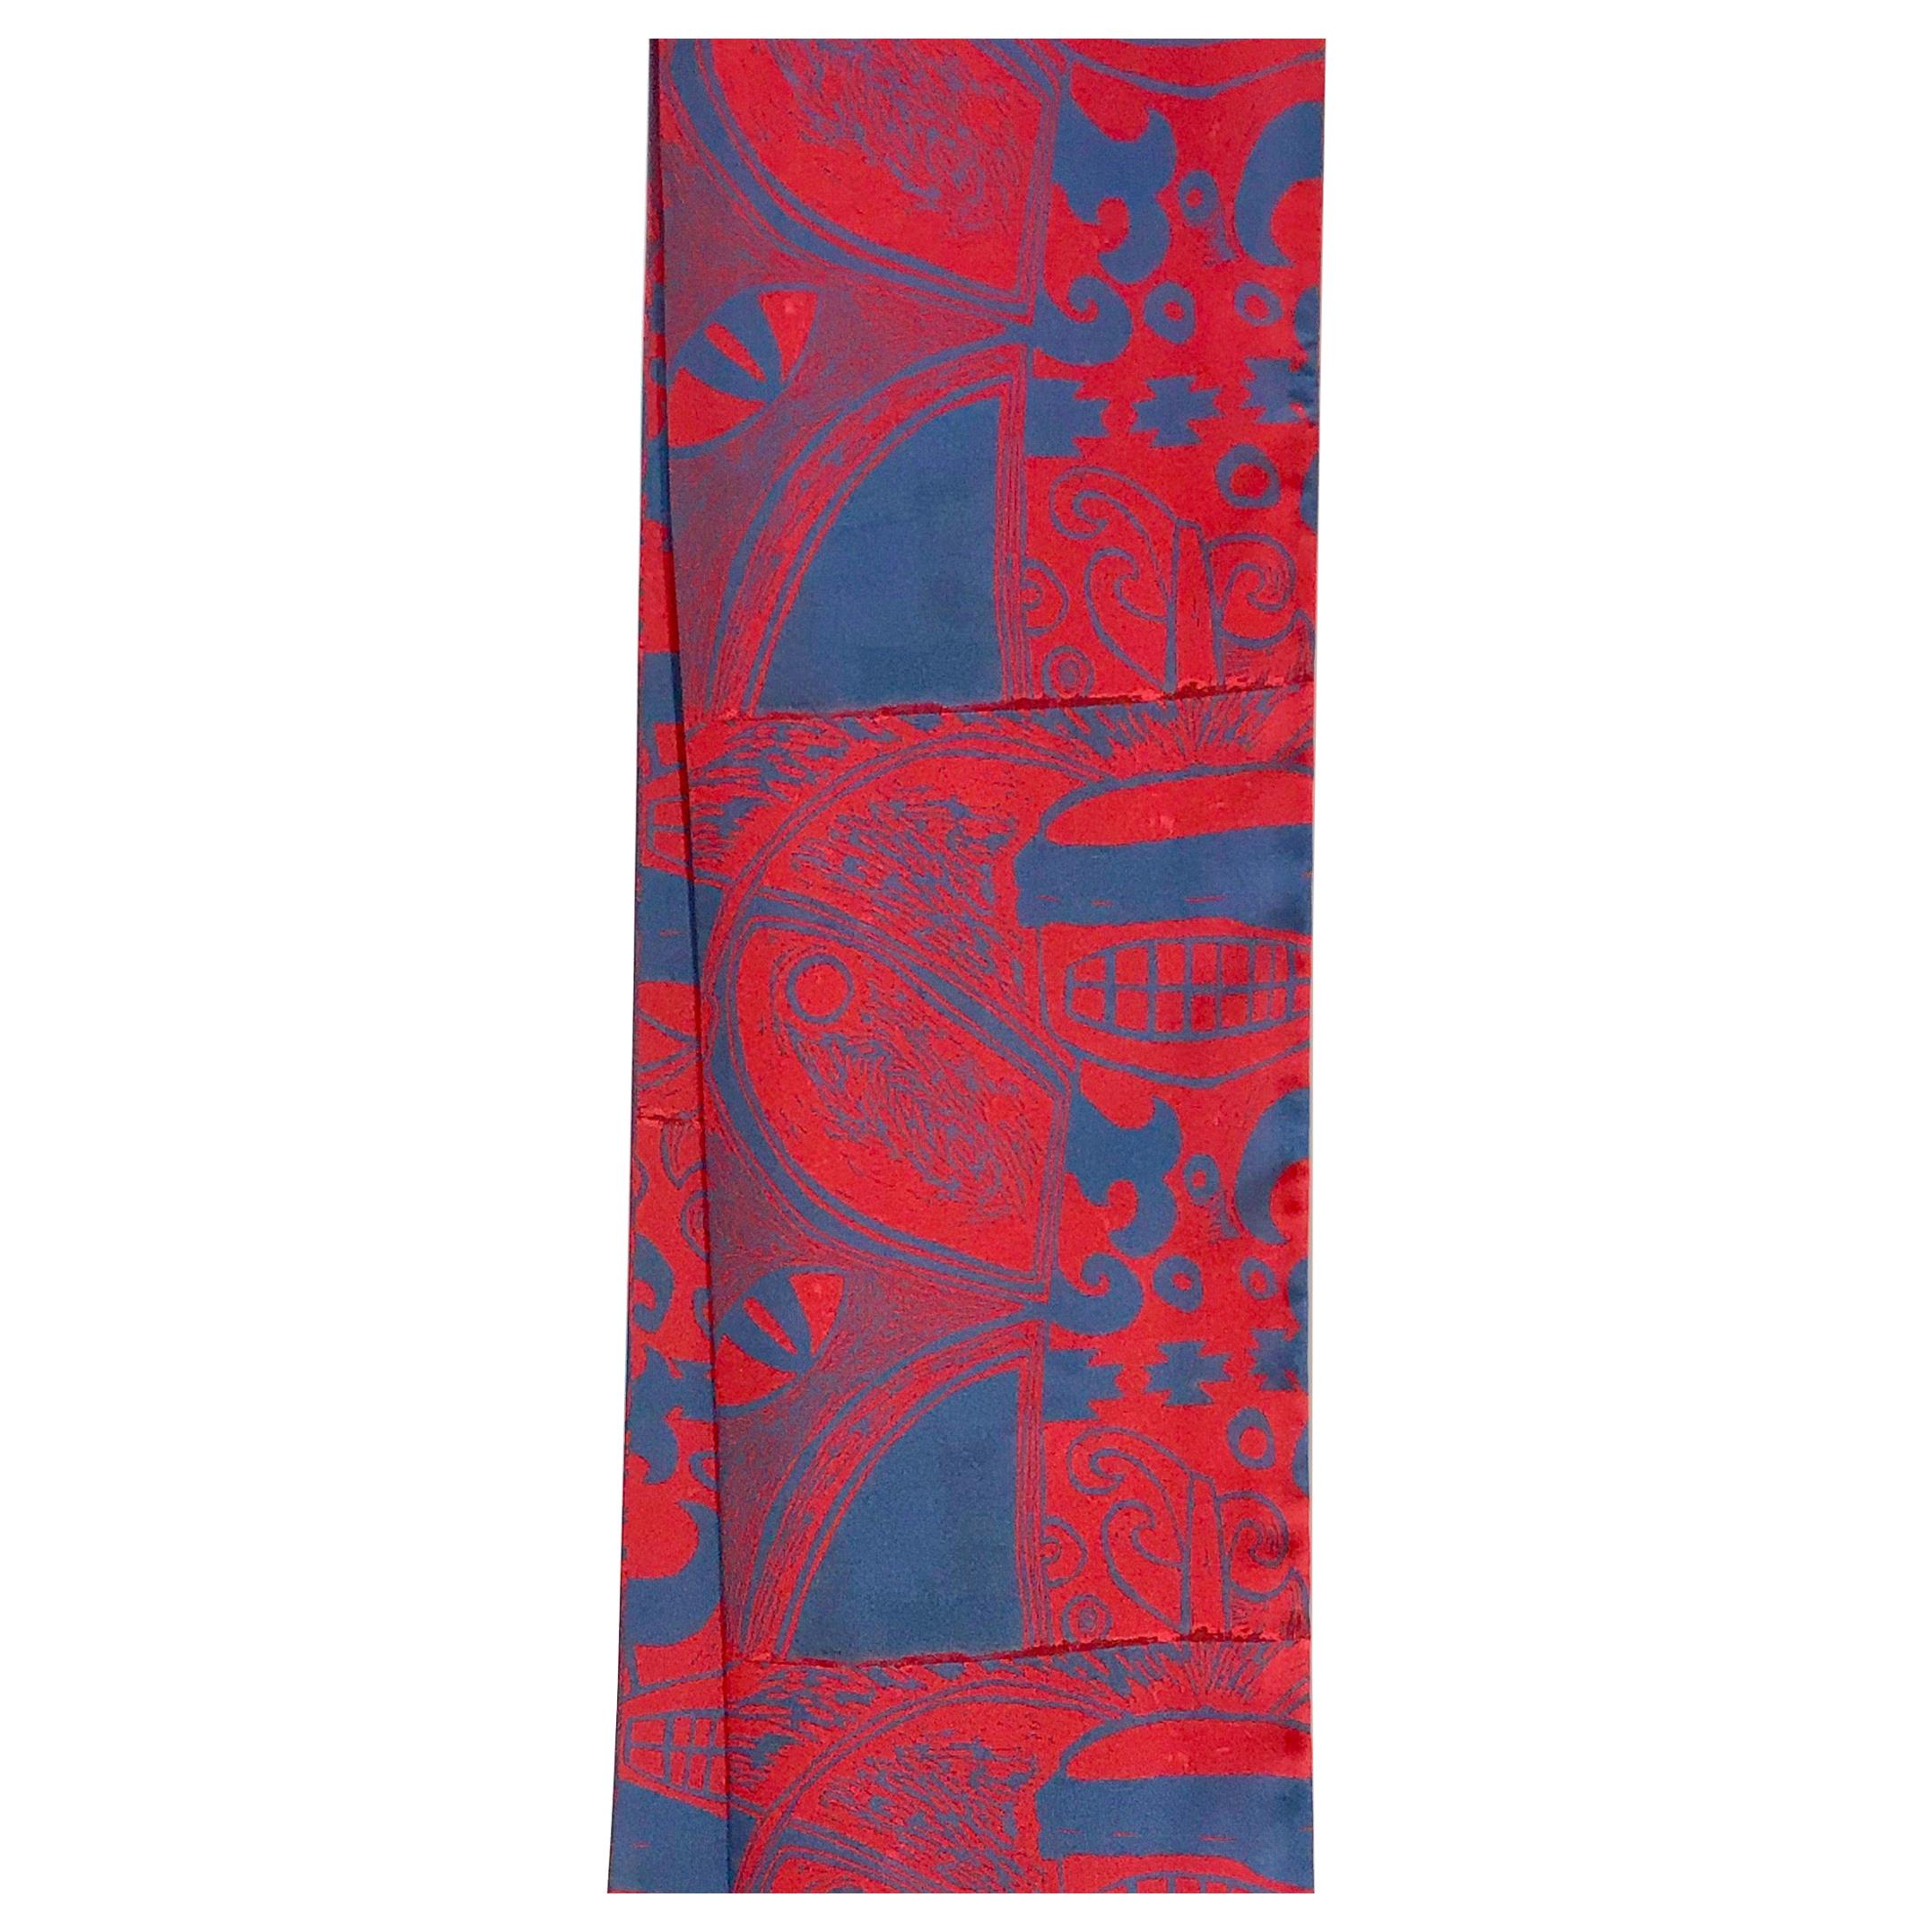 He Sees, scarf, by Melanie Yazzie, bee, red, blue, artist designed, Navajo 